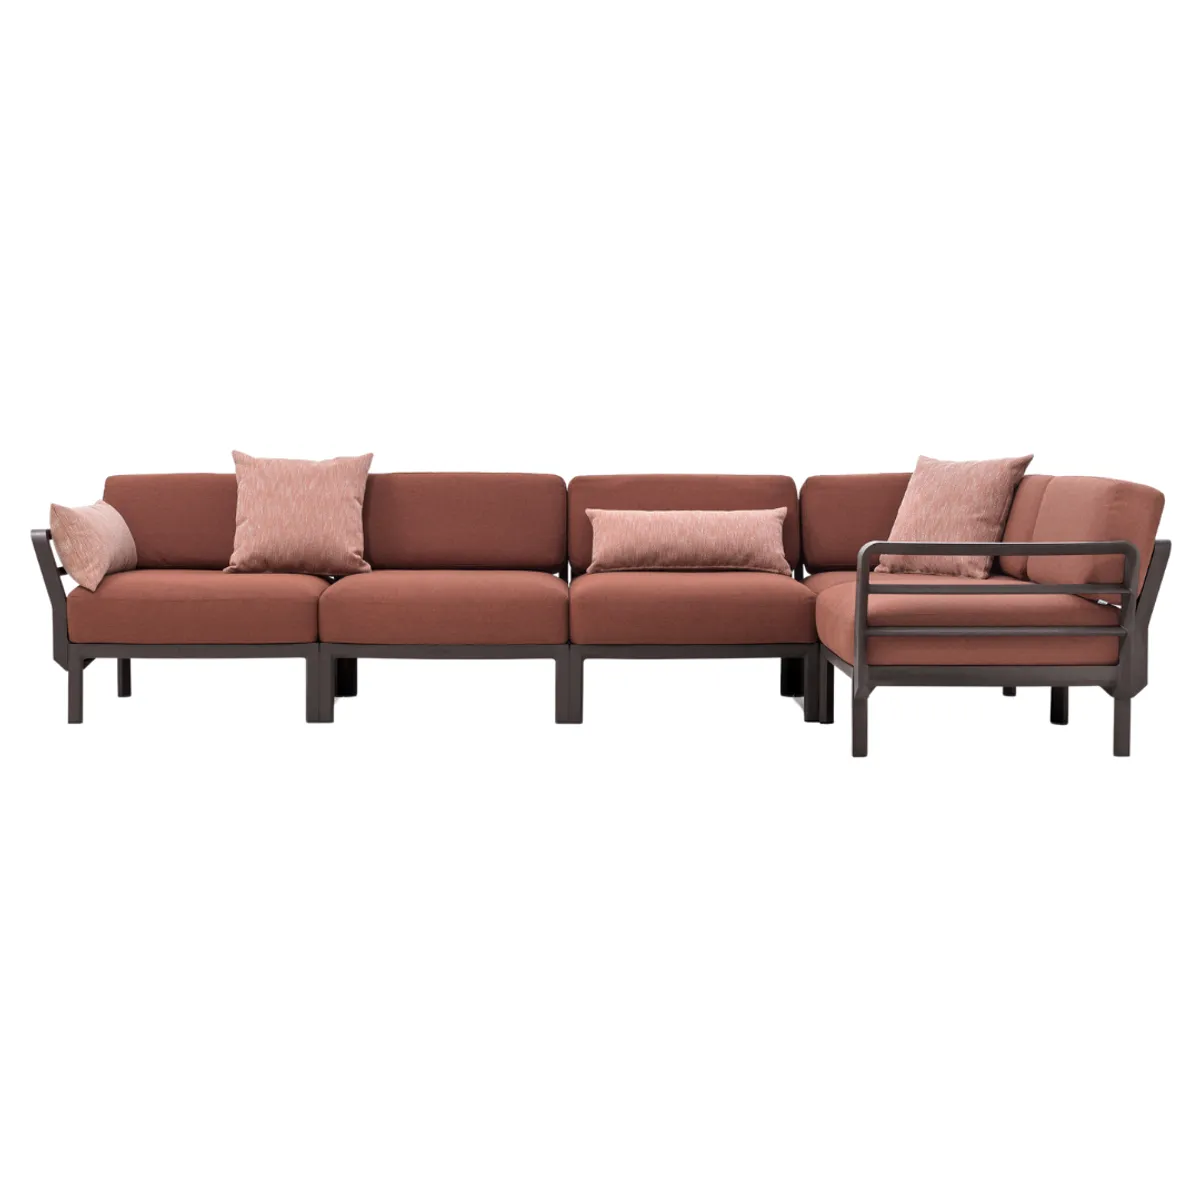 Maximo modular sofa 1